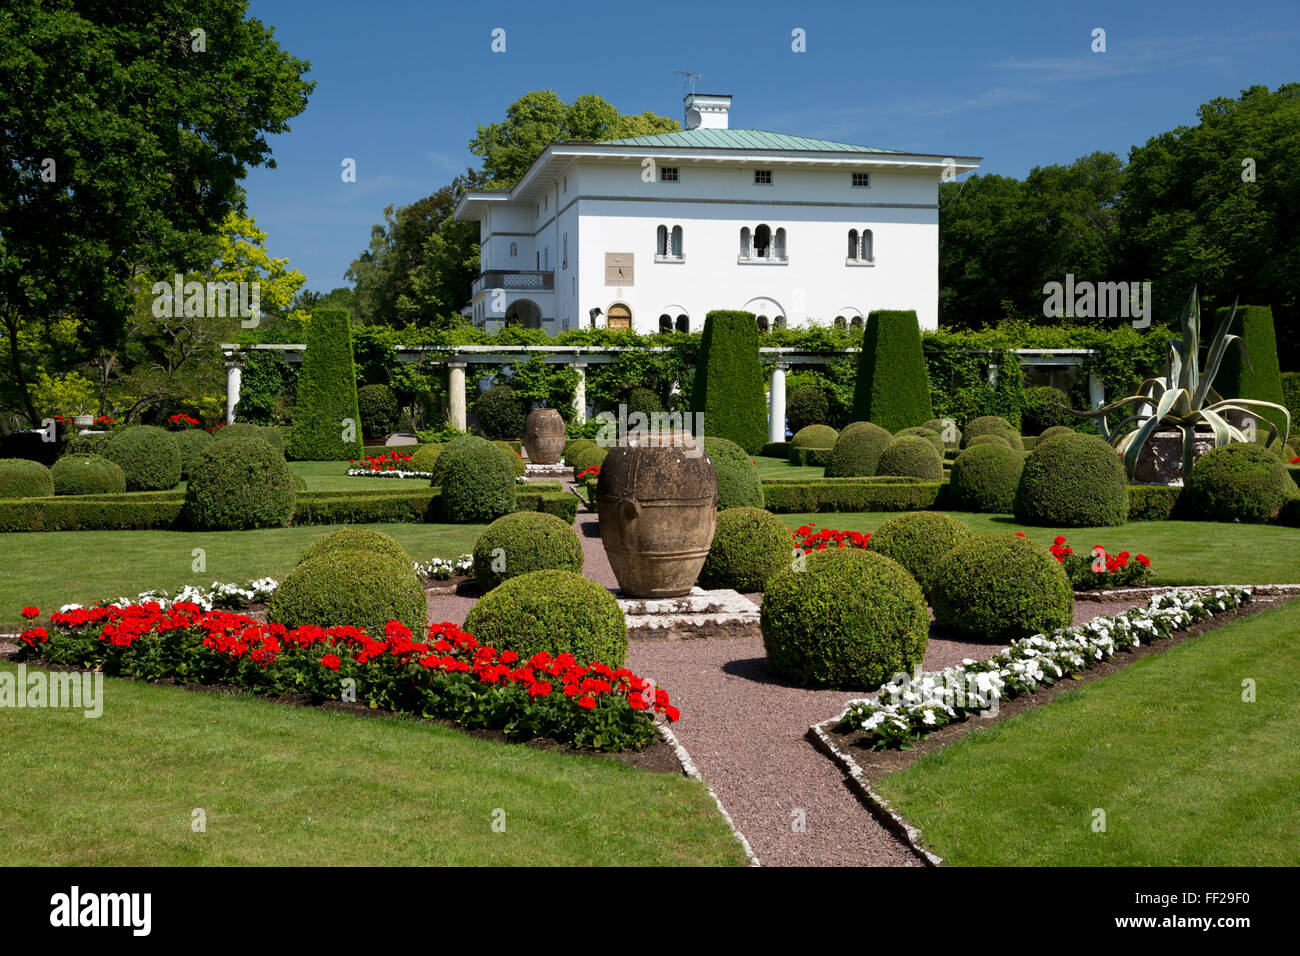 RoyaRM residenza estiva di SoRMRMiden PaRMace e giardini, BorghoRMm, ORMand, a sud-est della Svezia, Svezia, Scandinavia, Europa Foto Stock